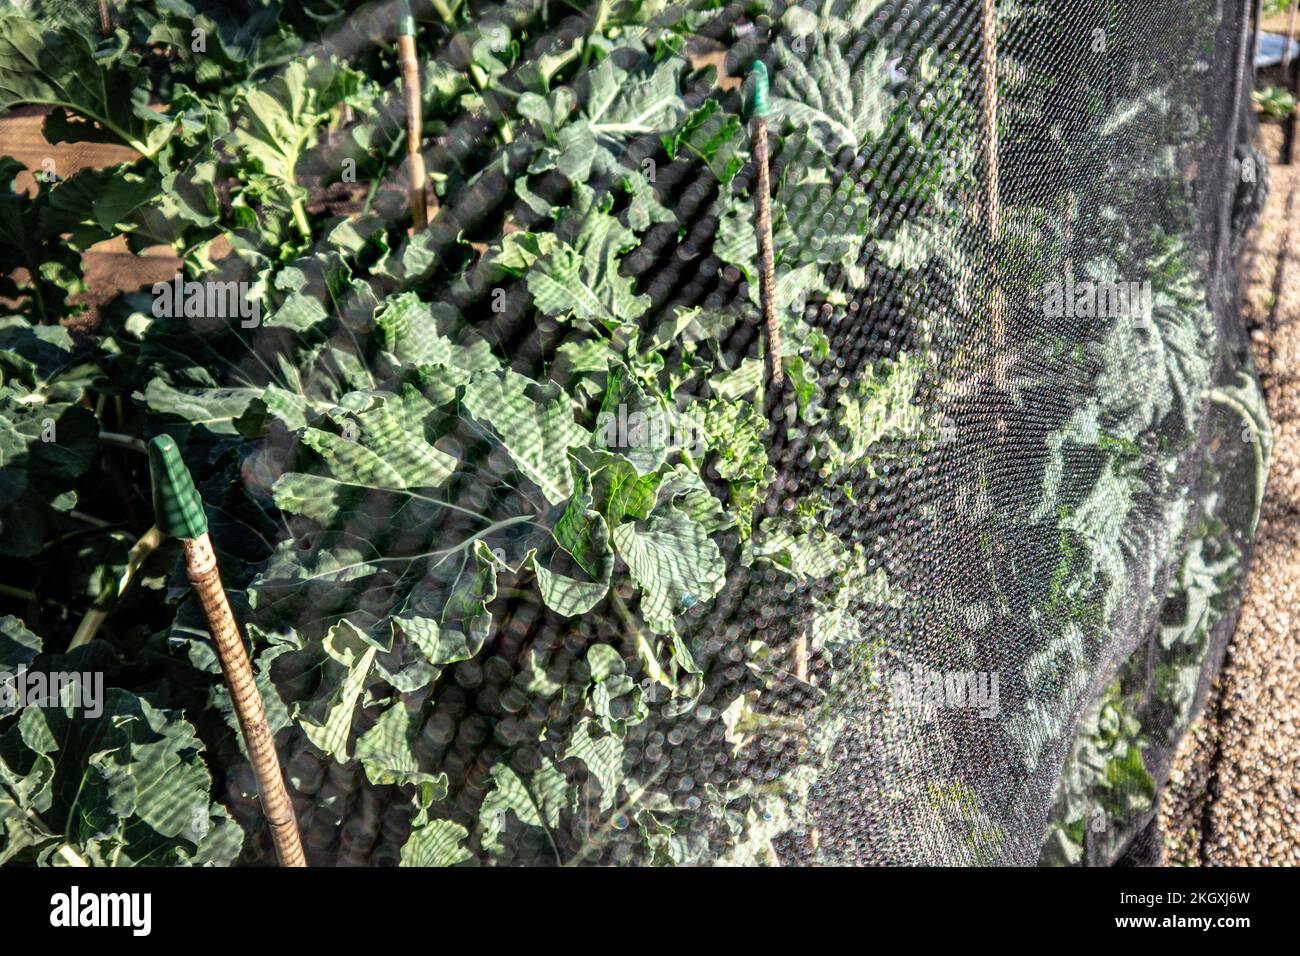 BROCOLI pourpre sparting 'Claret' Brassica oleracea Italica avec enviromesh filet protection dans le jardin de cuisine de Surrey UK Broccoli Claret est un hybride vigoureux et à haut rendement moderne comestible légumes sains Banque D'Images